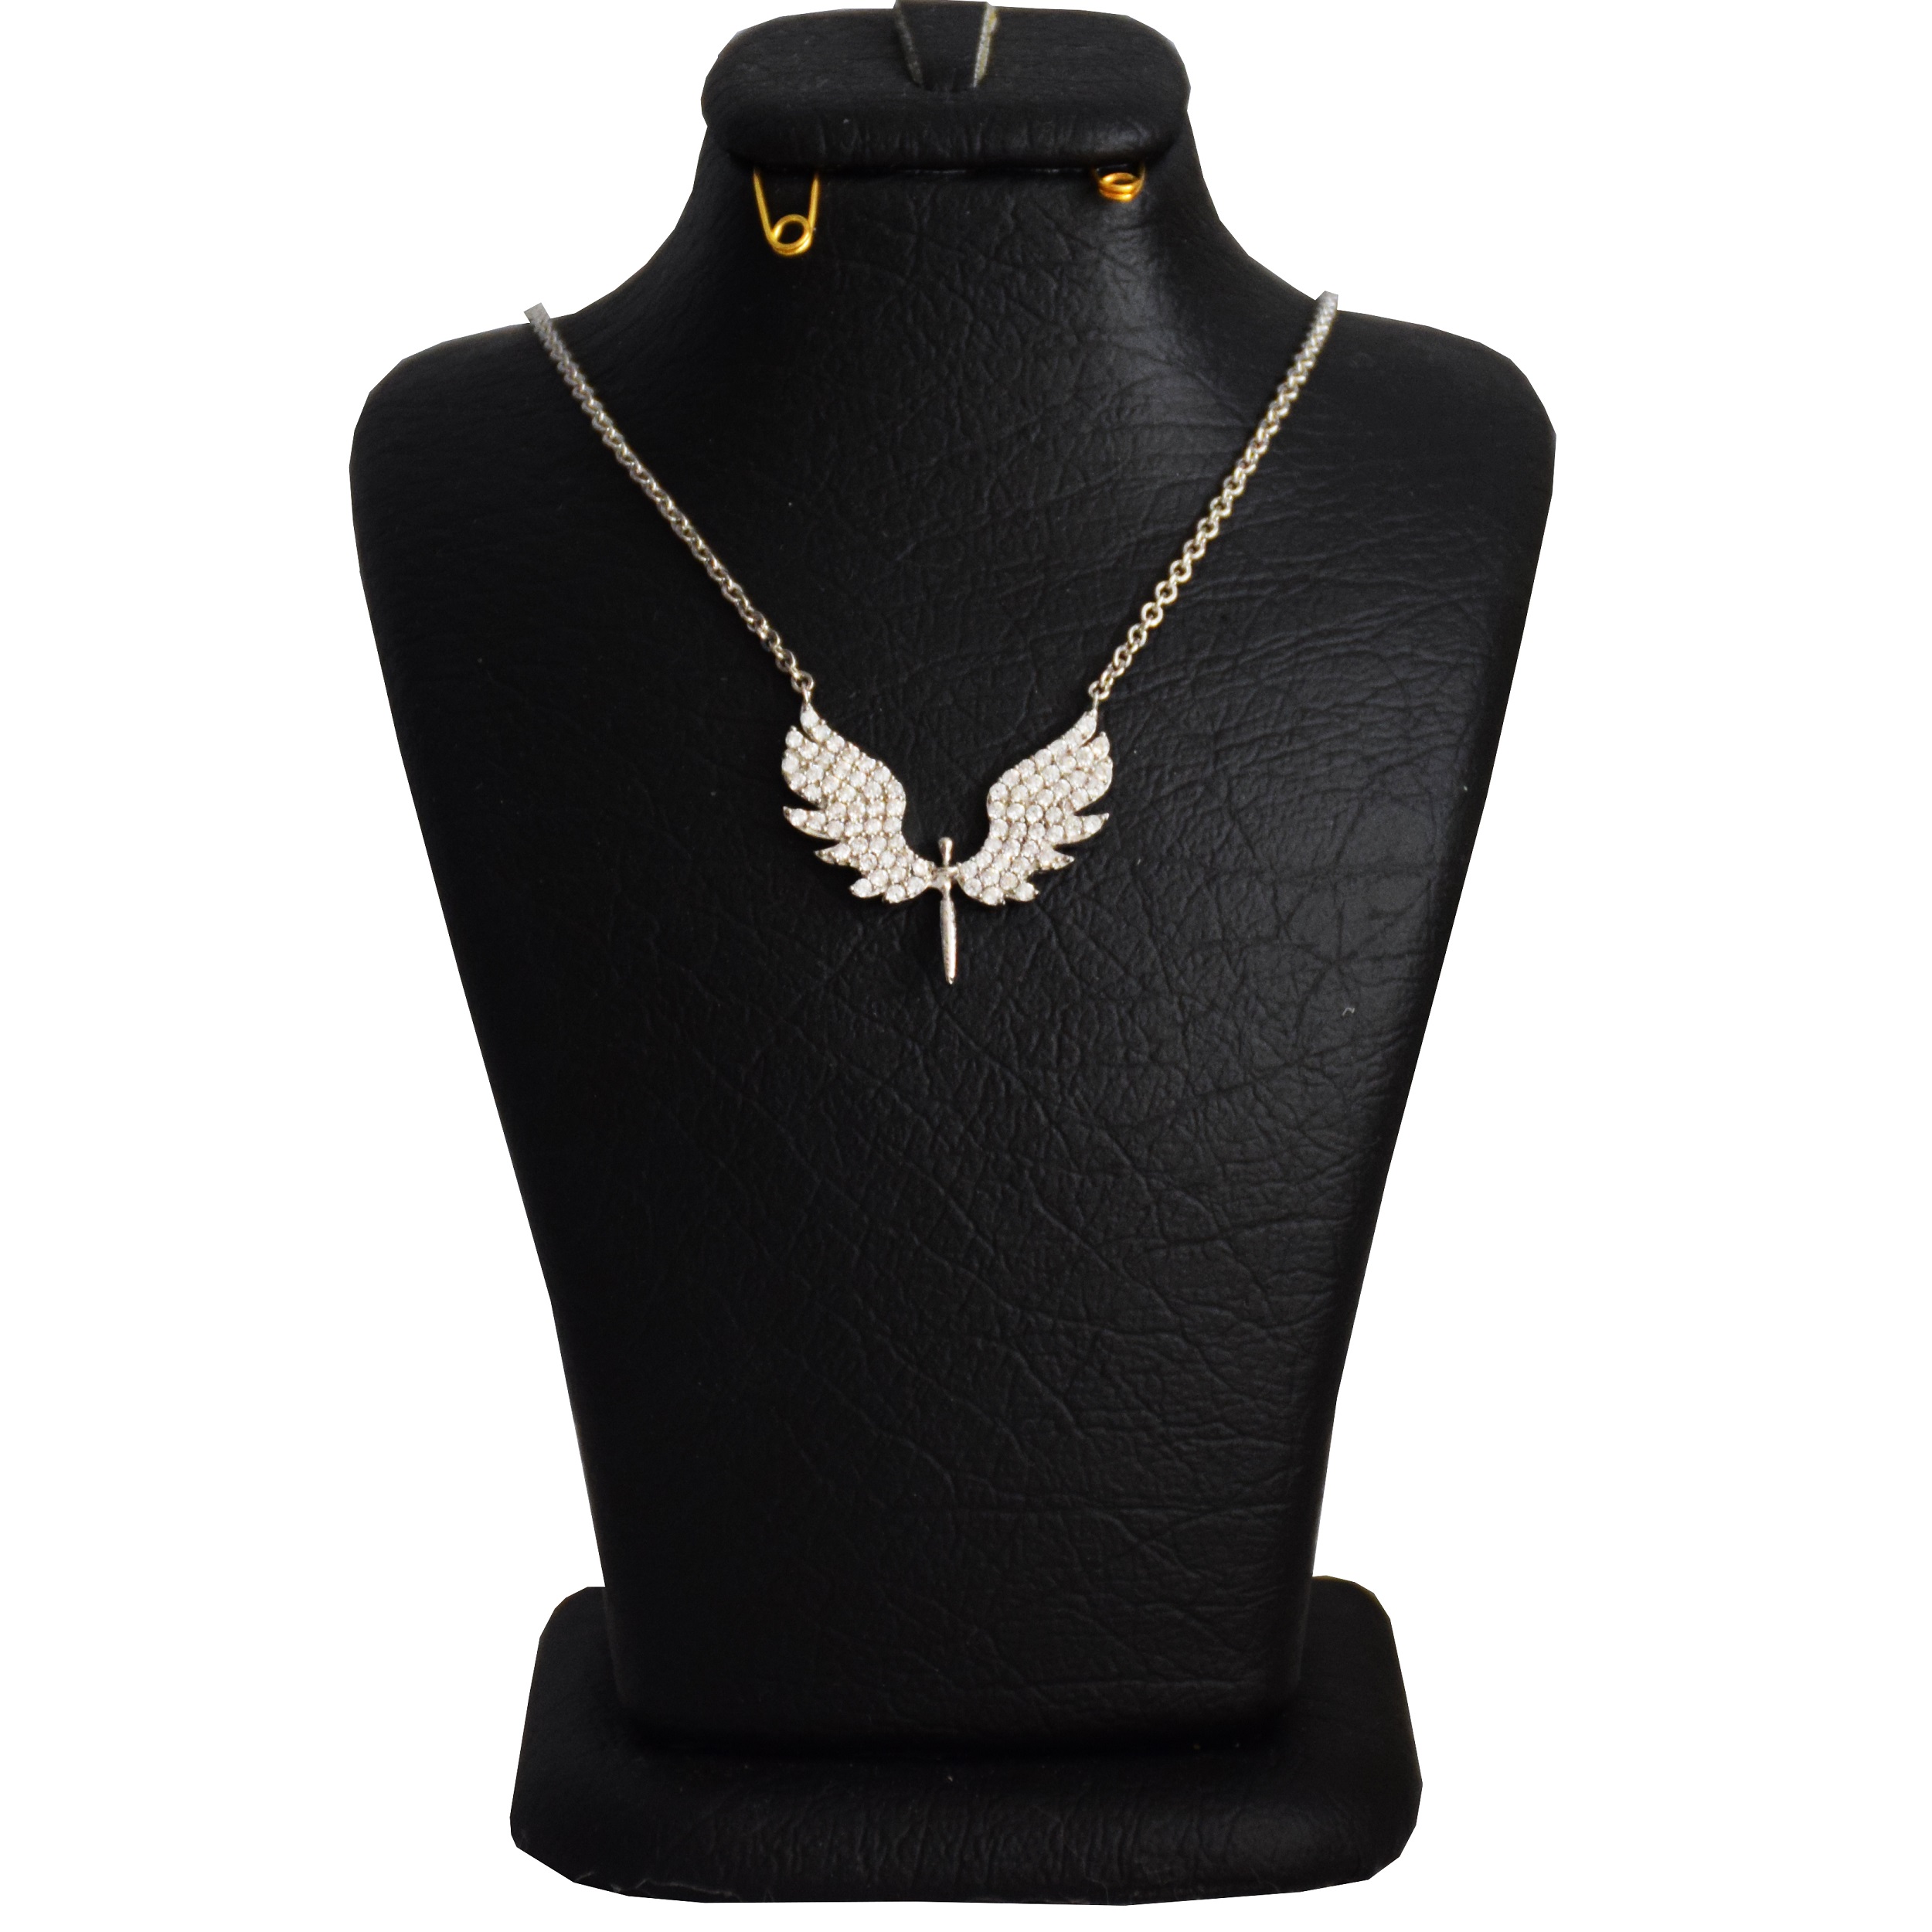  گردنبند نقره زنانه طرح فرشته کد N 031